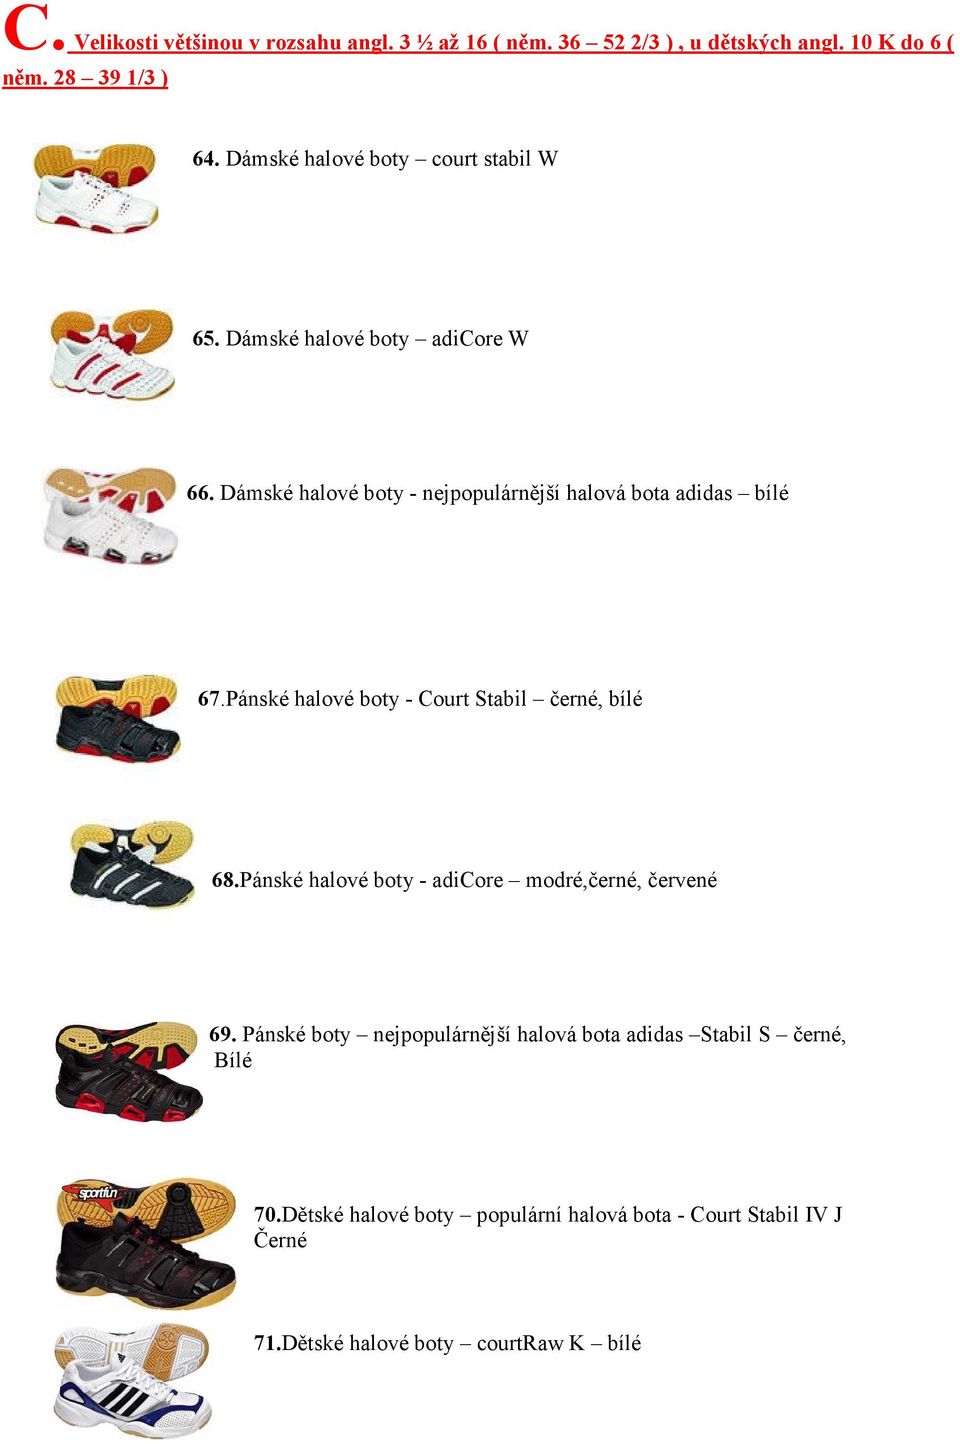 Dámské halové boty - nejpopulárnější halová bota adidas bílé 67.Pánské halové boty - Court Stabil černé, bílé 68.